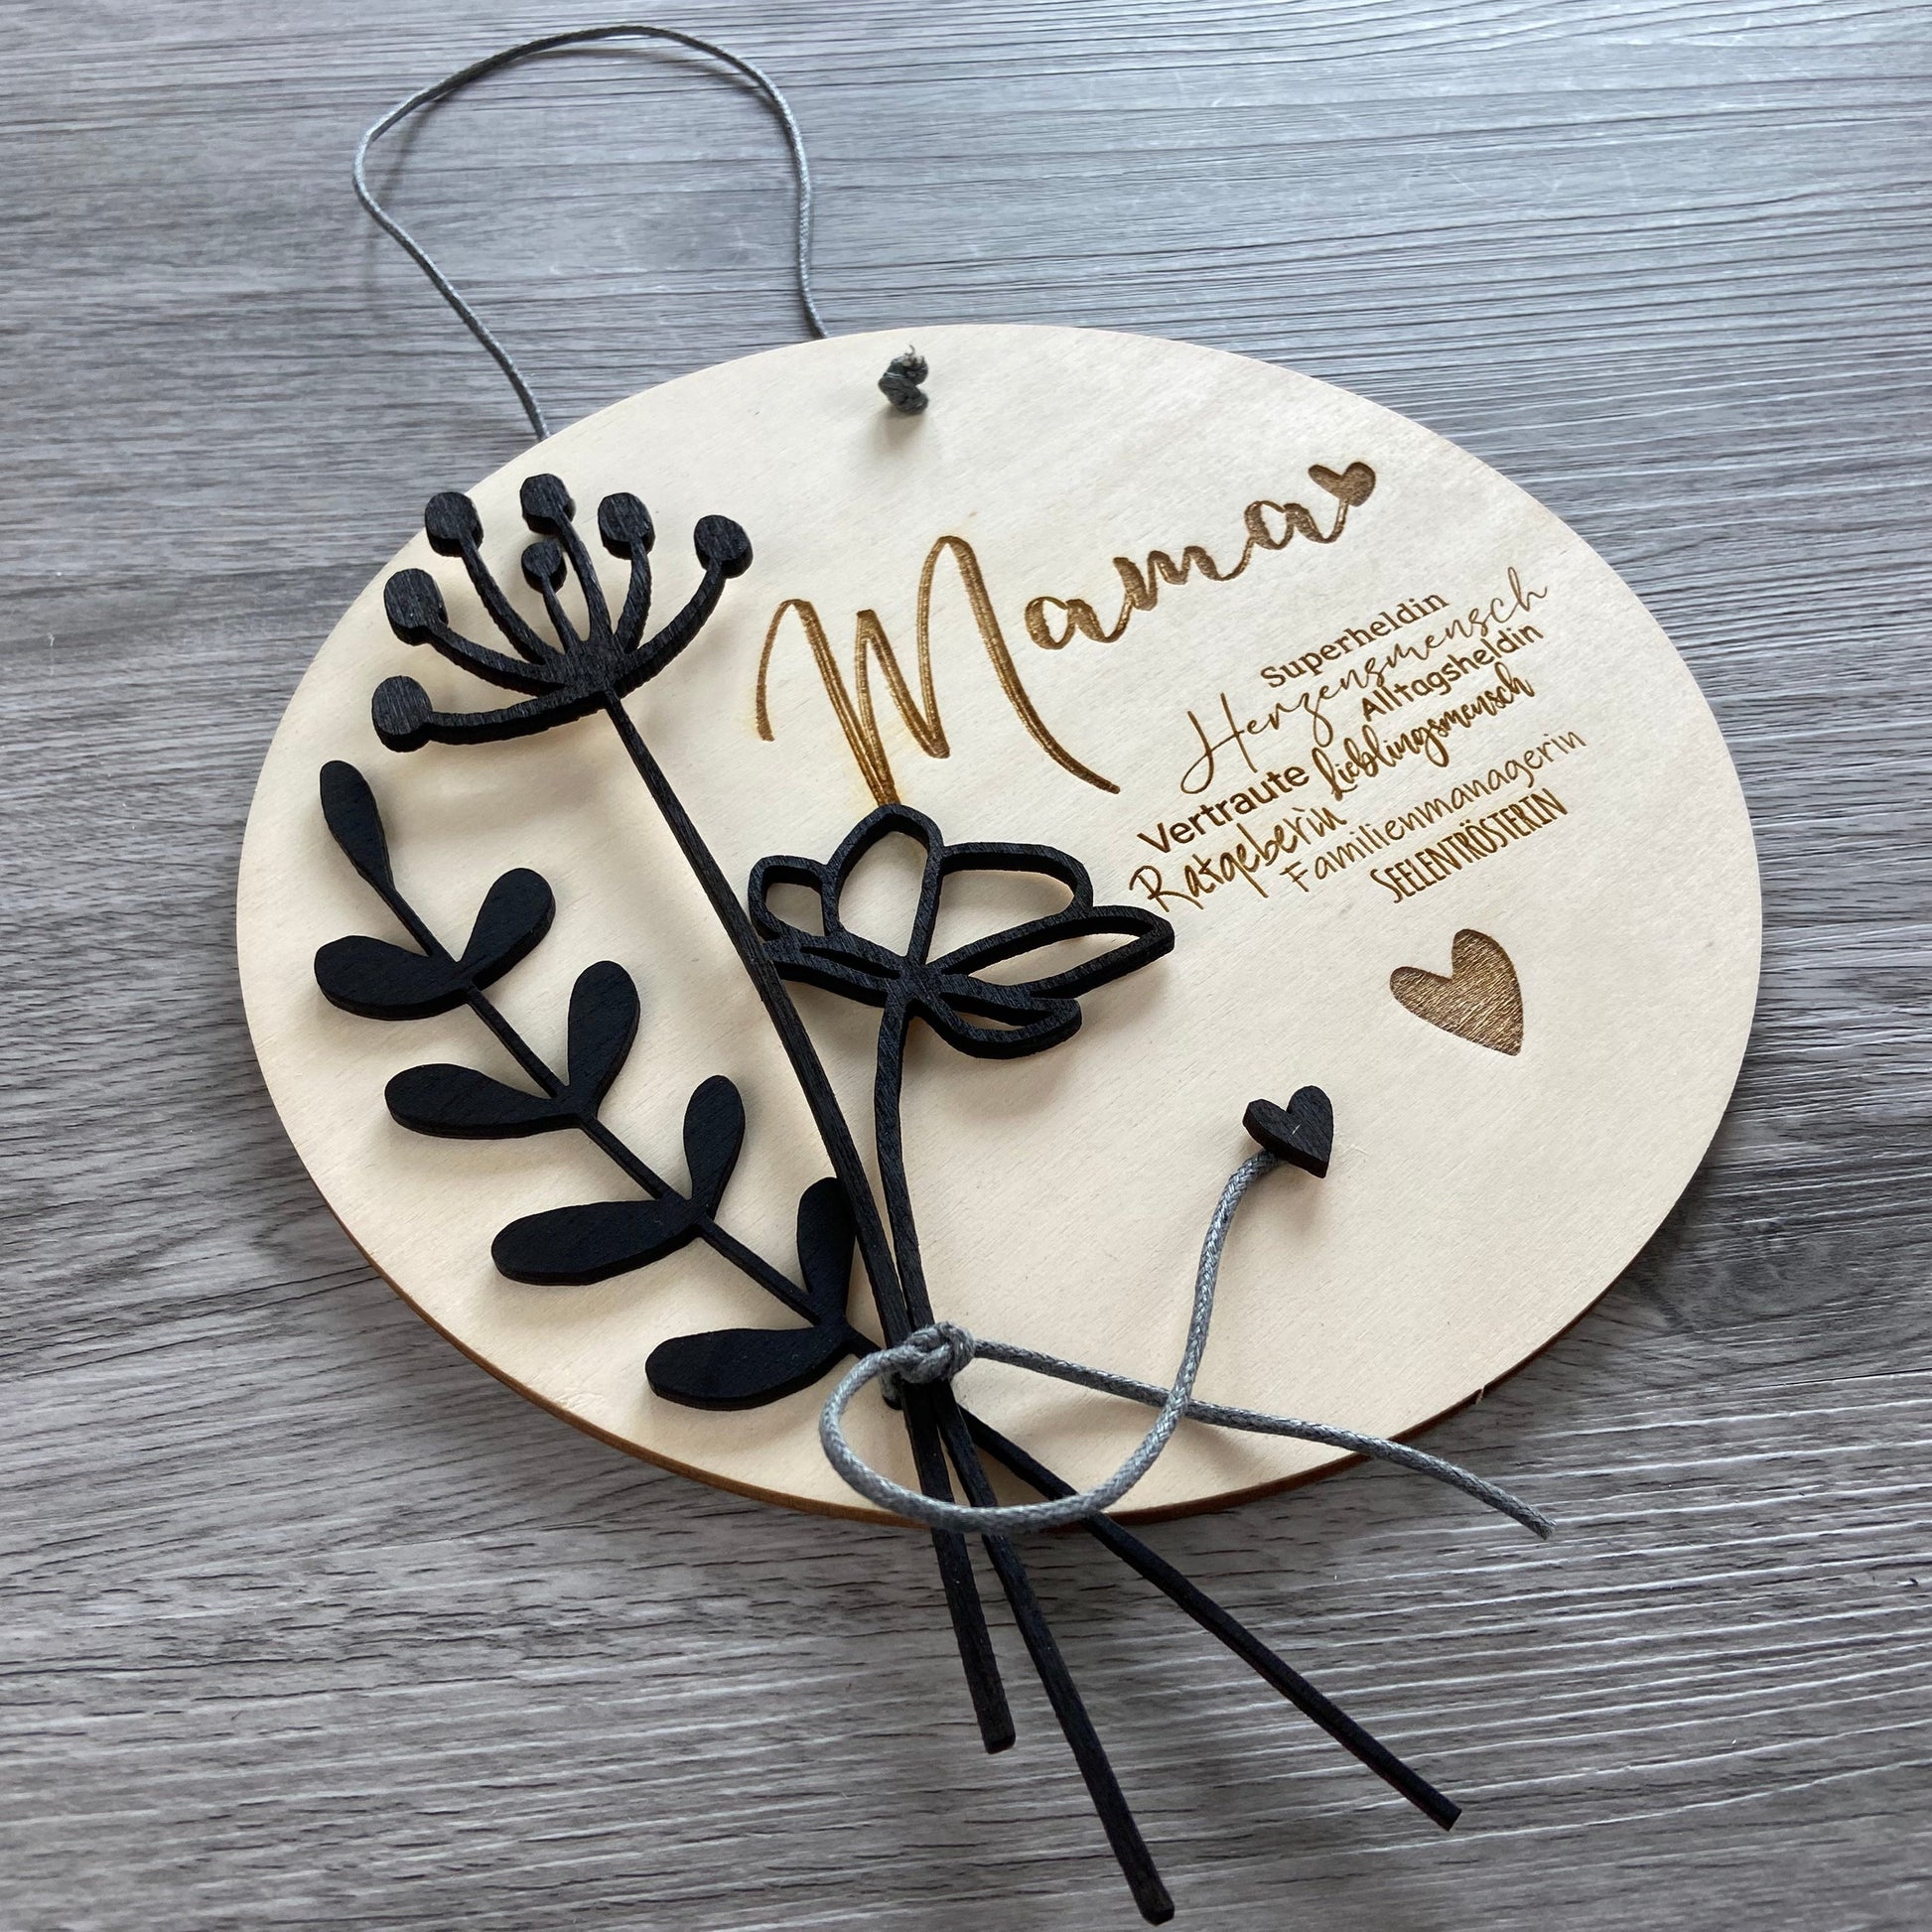 Holzschild Mama mit schwarzen Holzblumen verziert, mit Synonymen passend zu "Mama"  u.a. Herzensmensch, Superheldin, Familienmanagerin - Geschenkidee zum Muttertag mit individueller Gravur Wunschtext, leichte Schrägansicht